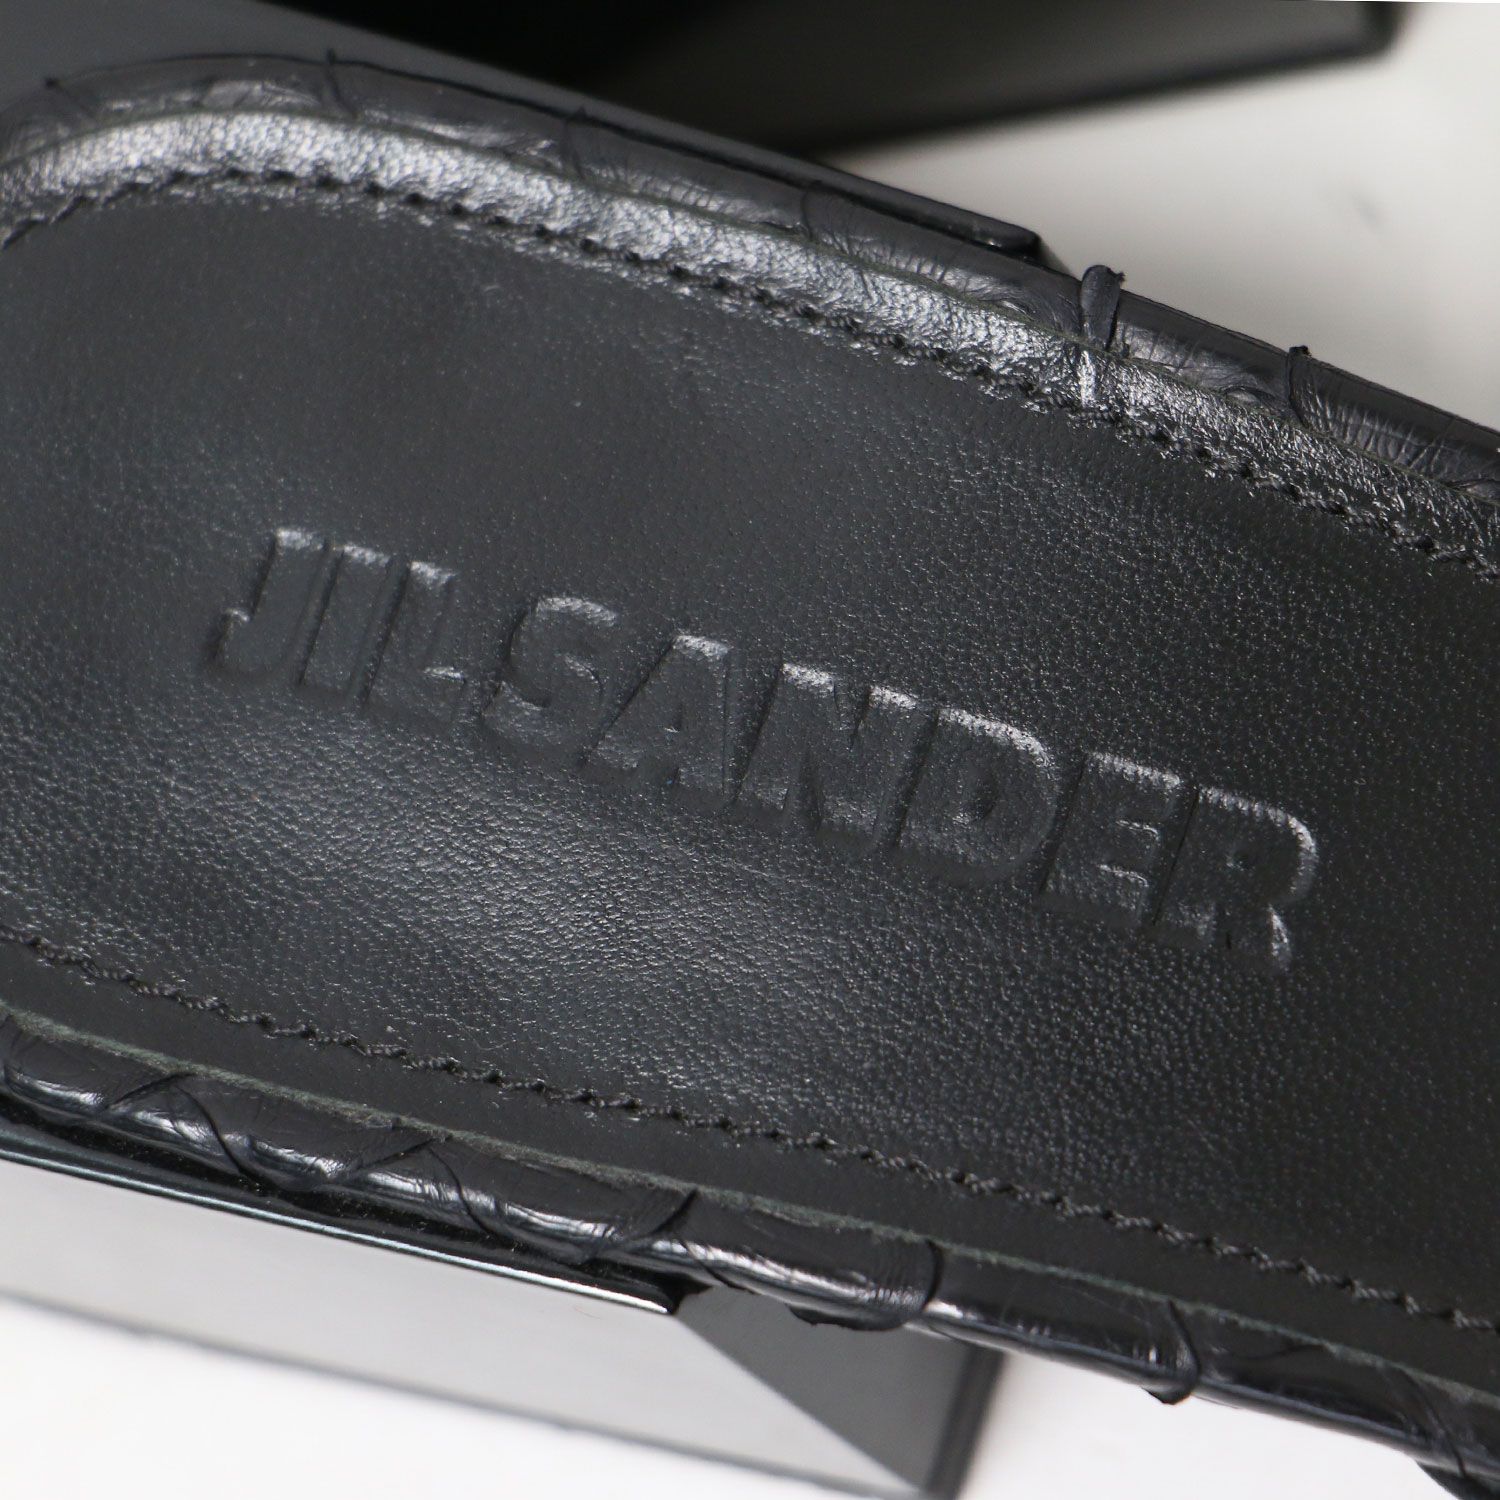 JIL SANDER ジルサンダー ミュール サンダル ブラック ベージュ 黒 36(23.0cm) スクエアトゥ チャンキーヒール ベルト バックル  バイカラー レザー シューズ 靴【レディース】